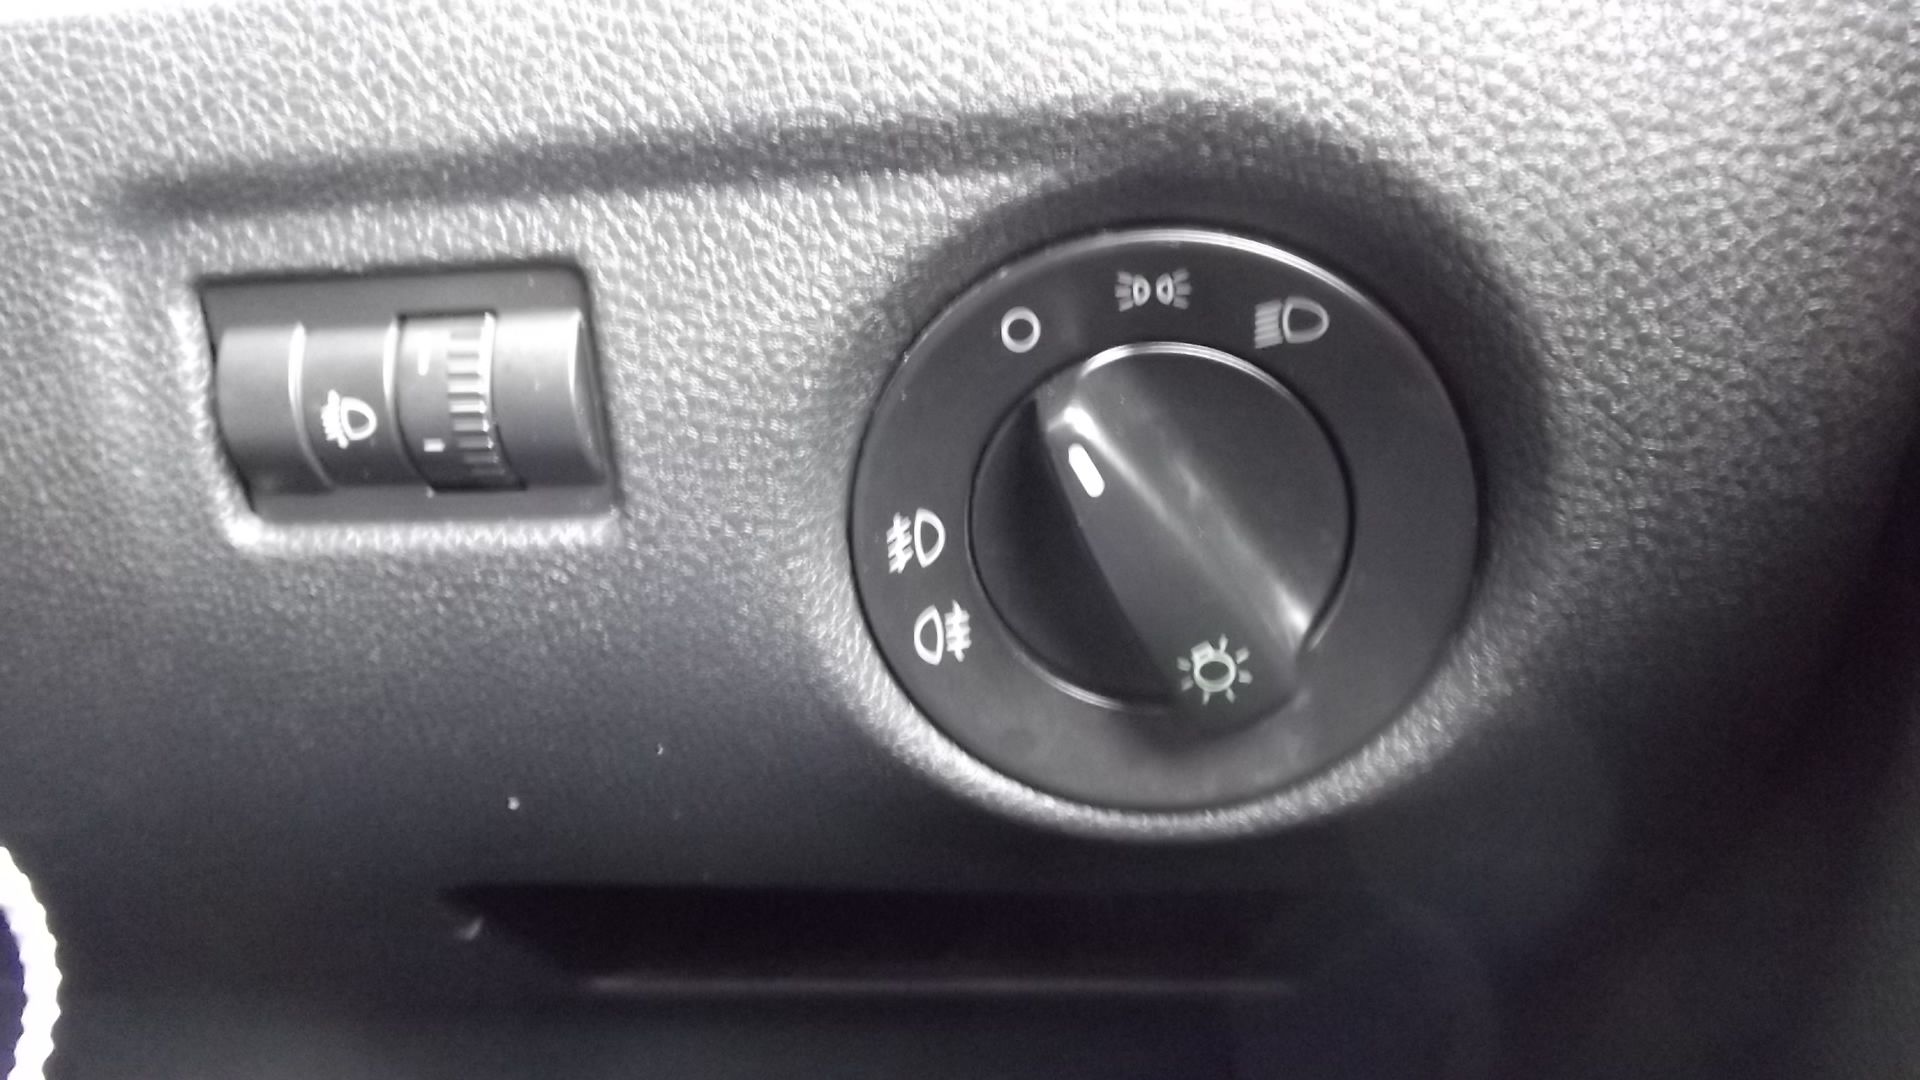 2014 Skoda Fabia Monte Carlo 1.6 Tdi Cr 5Dr Hatchback - CL505 - NO VAT ON THE HAMMER - - Image 18 of 26